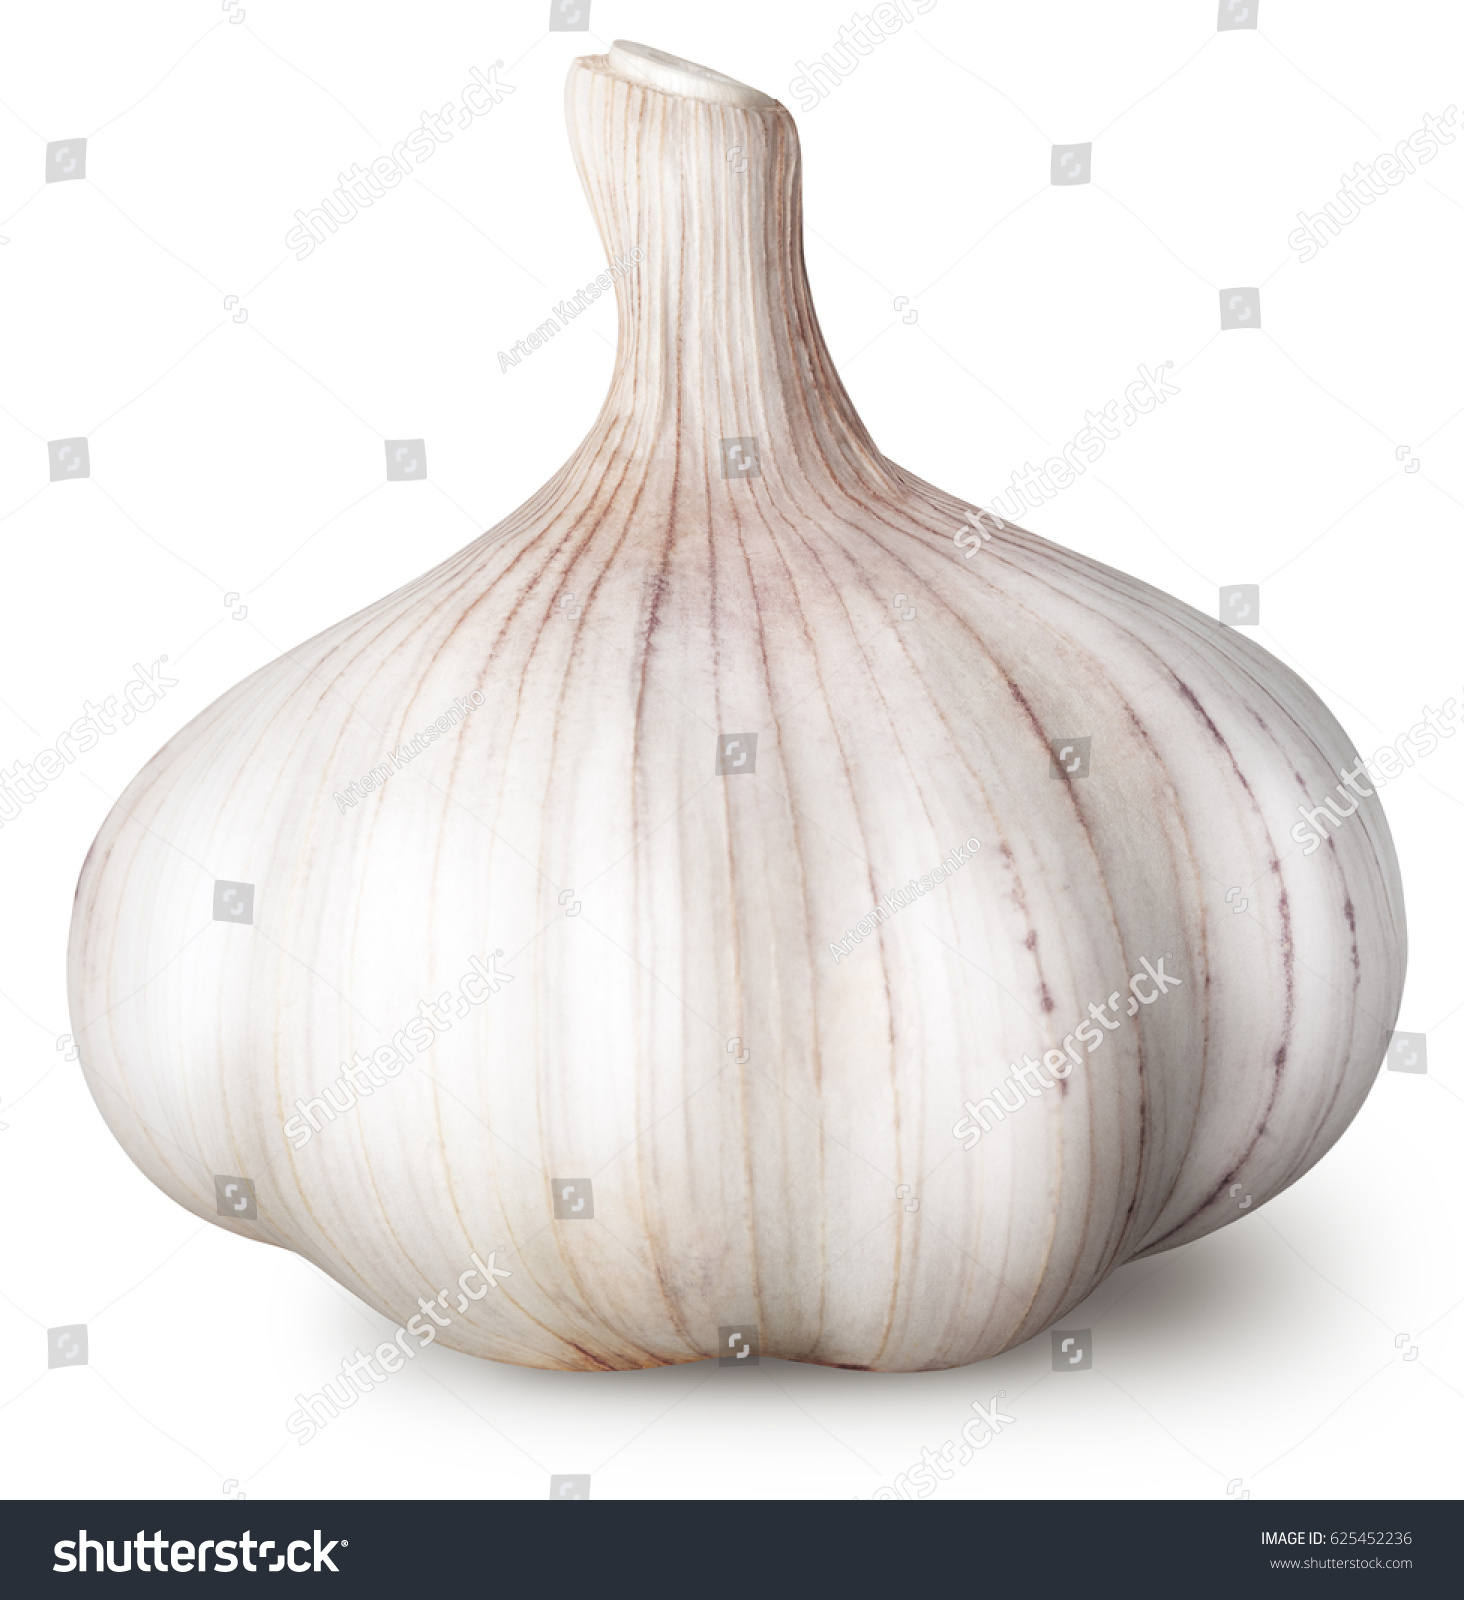 Isolated garlic. Raw garlic isolated on white background #625452236